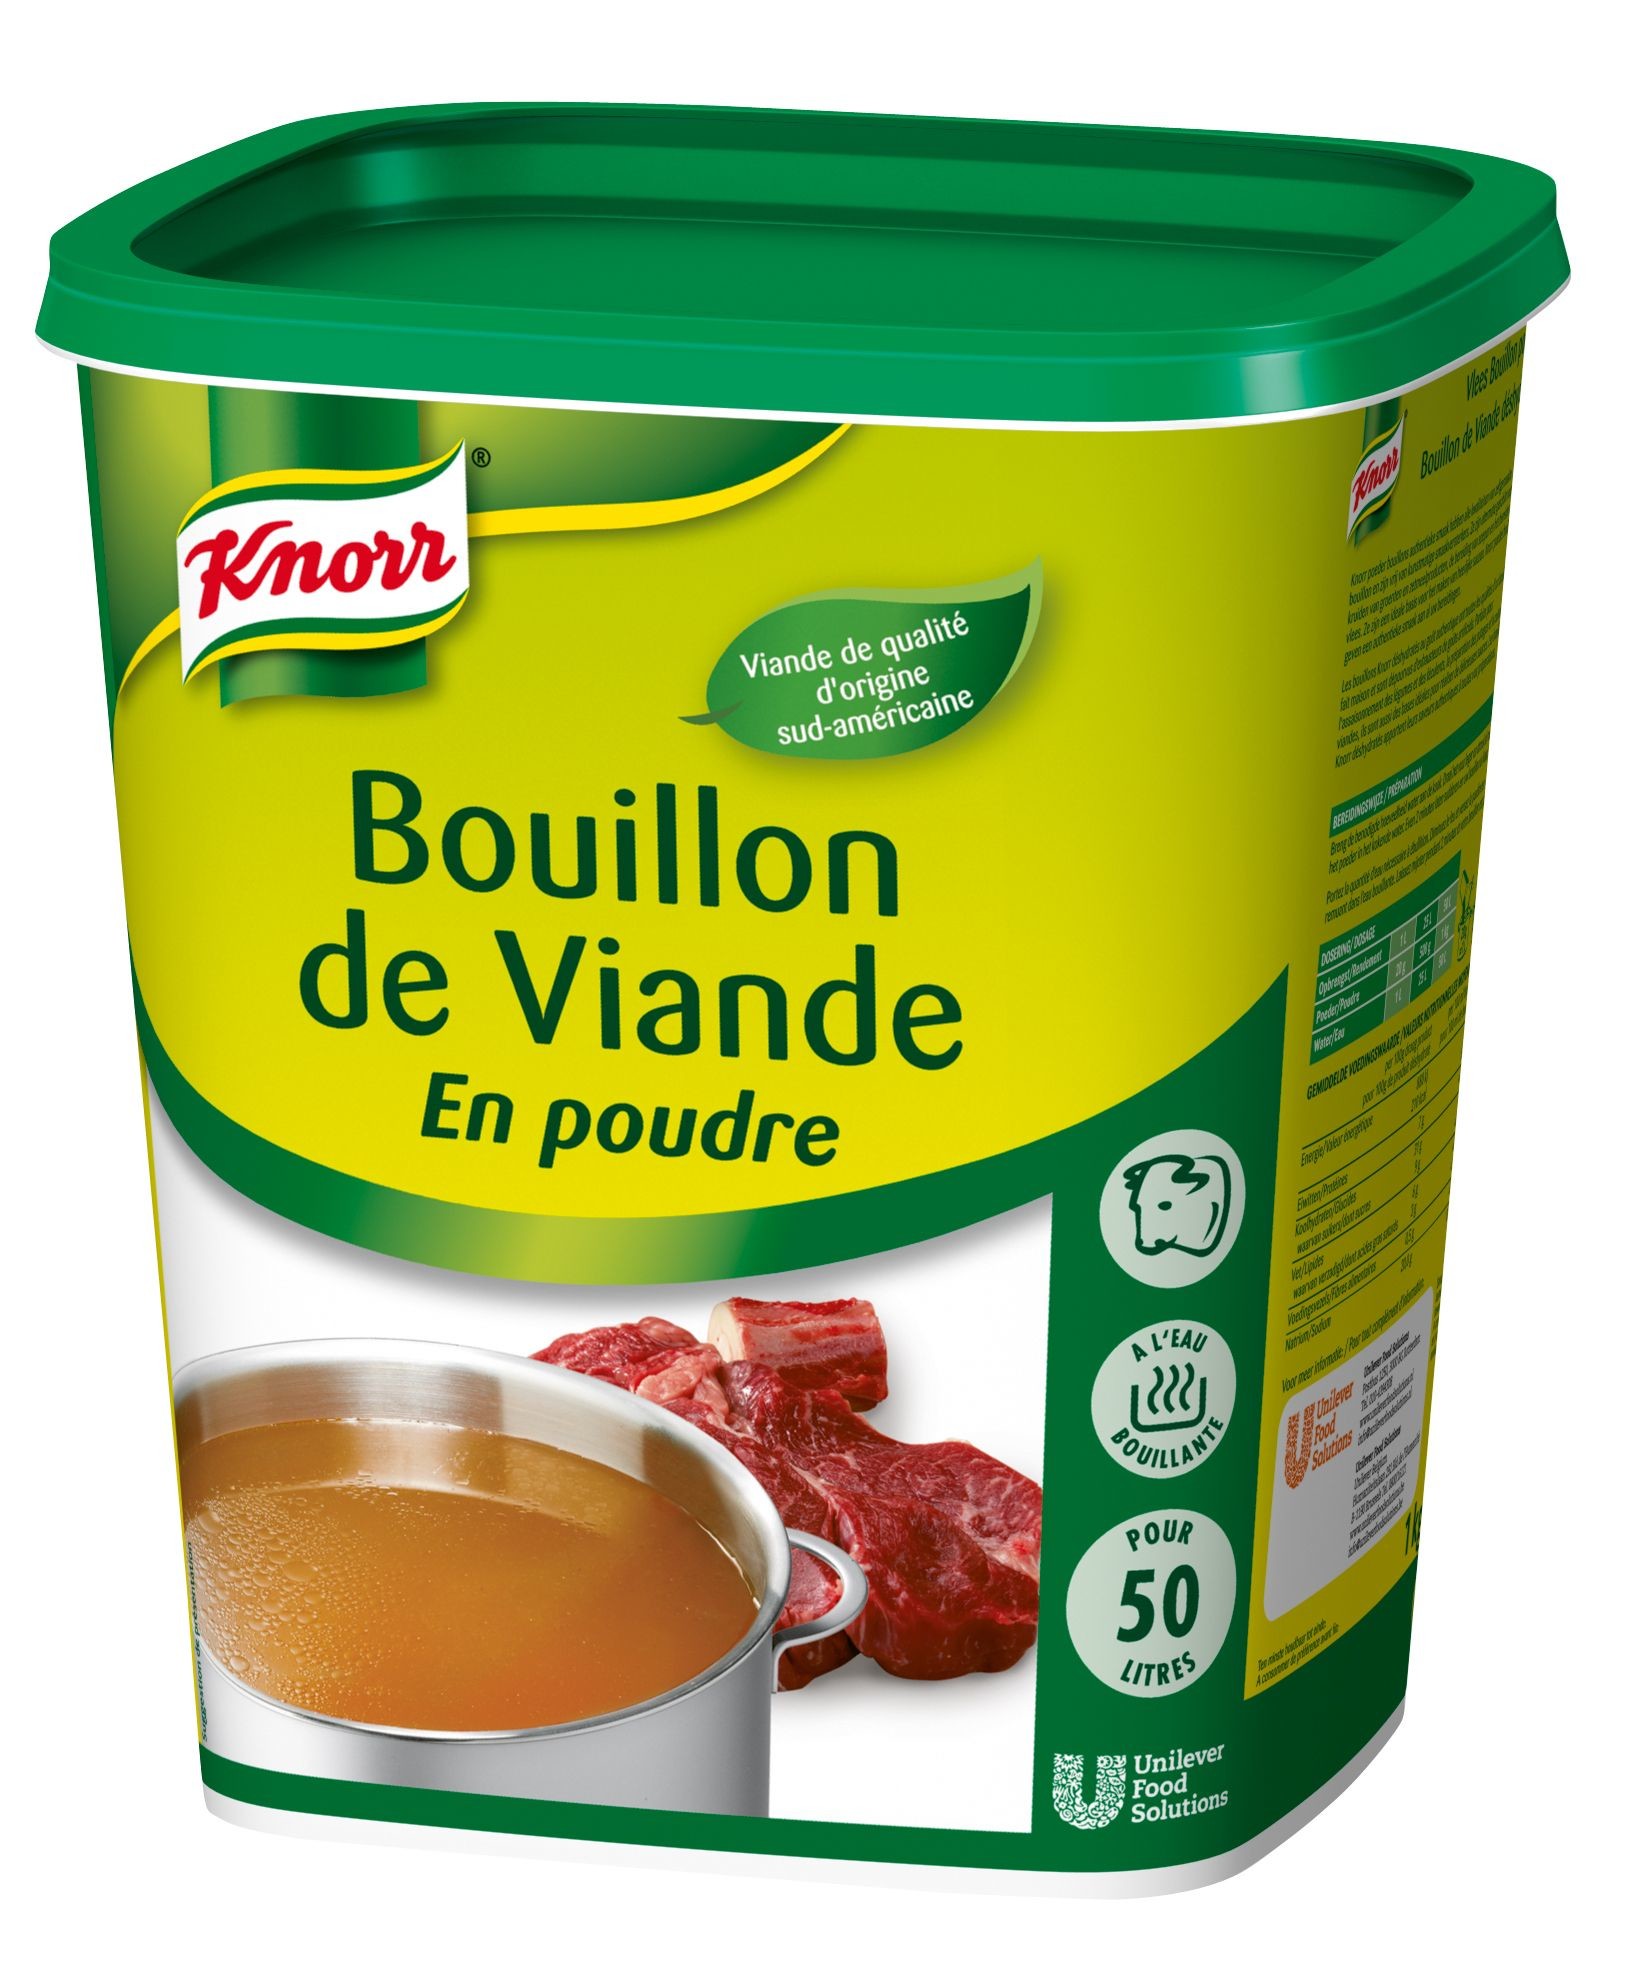 Knorr Gastronom bouillon viande poudre 1kg